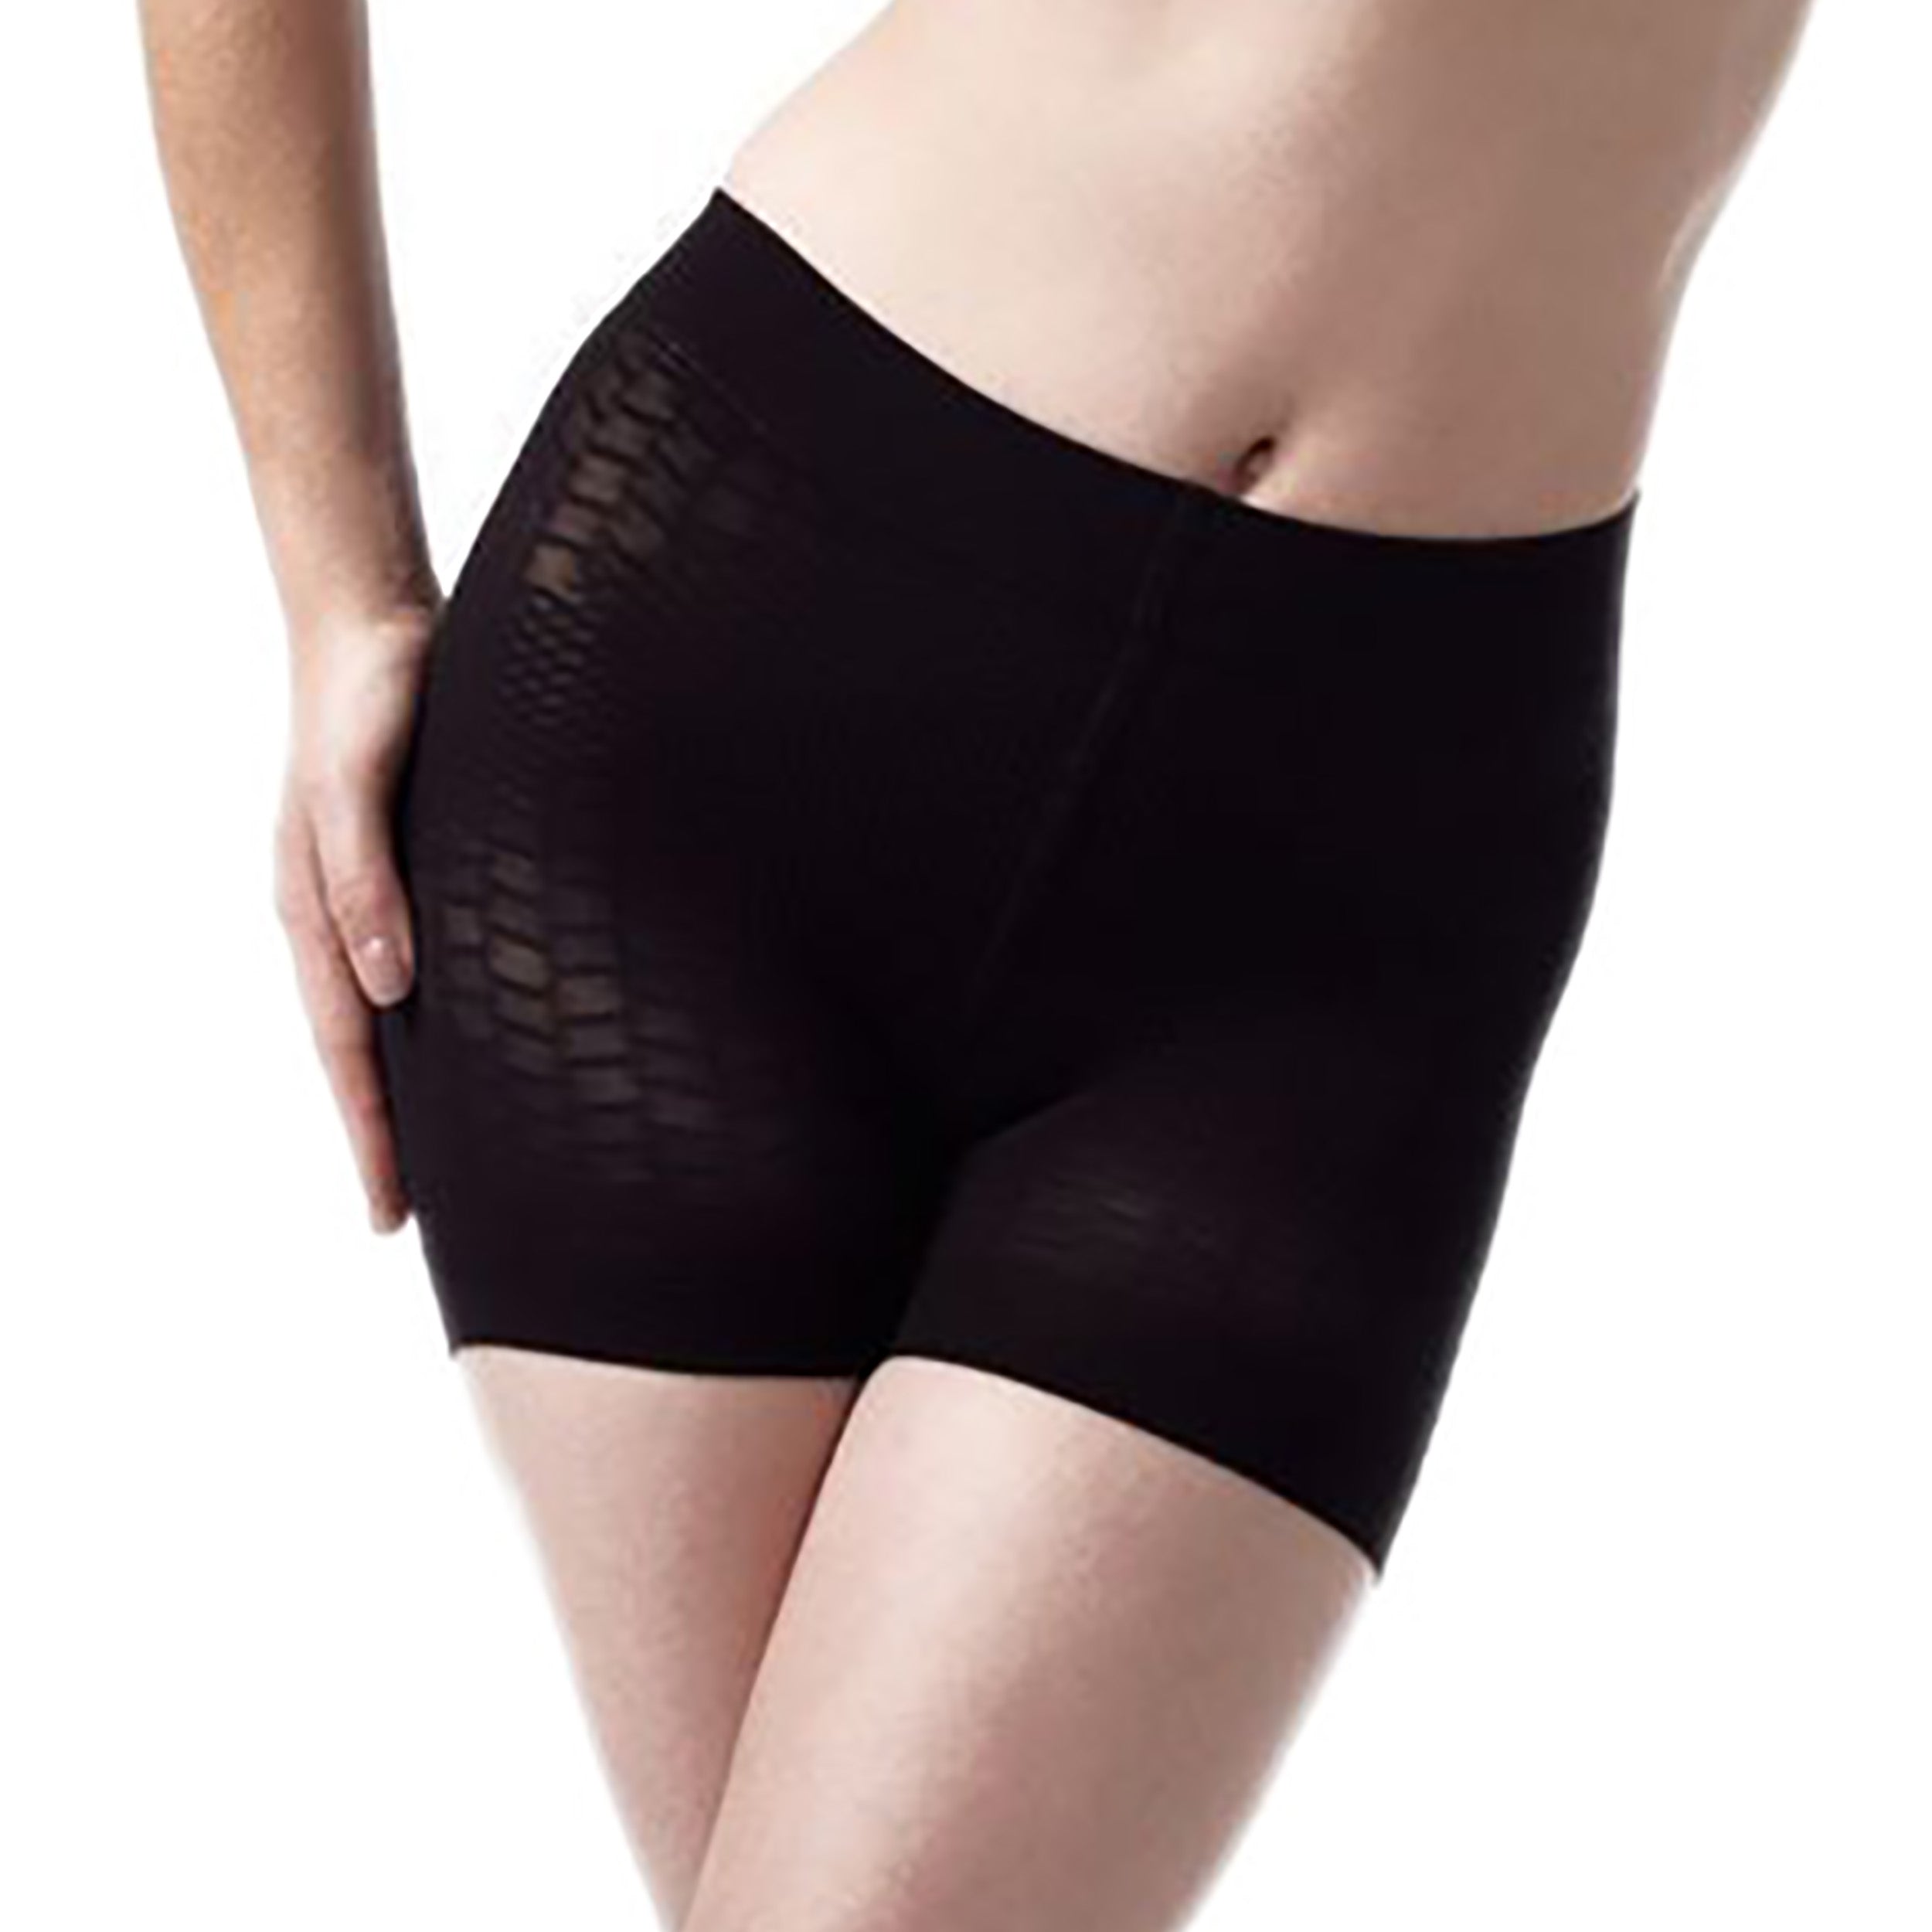 Rubberfashion Shapeware Shorts - Bauchweg Miederhose stark formend - Anti Cellulite Shaping Unterwäsche Frauen - Damen